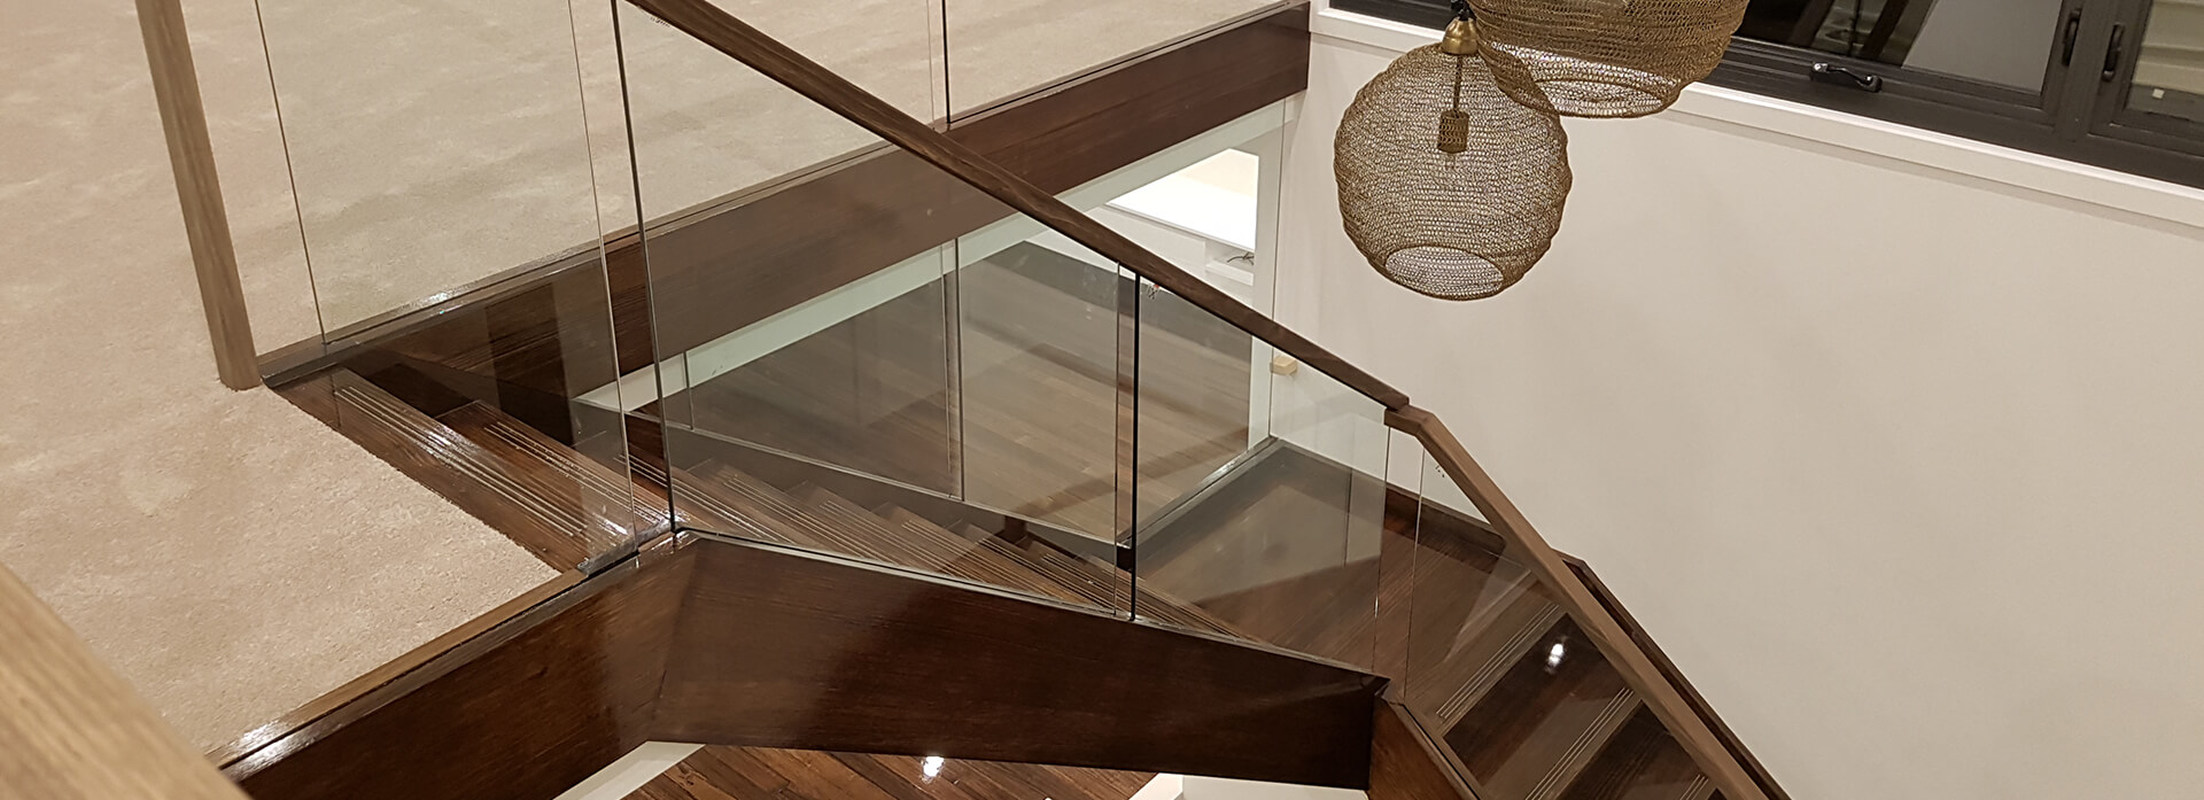 schody drewniane zabiegowe z szklaną balustradą